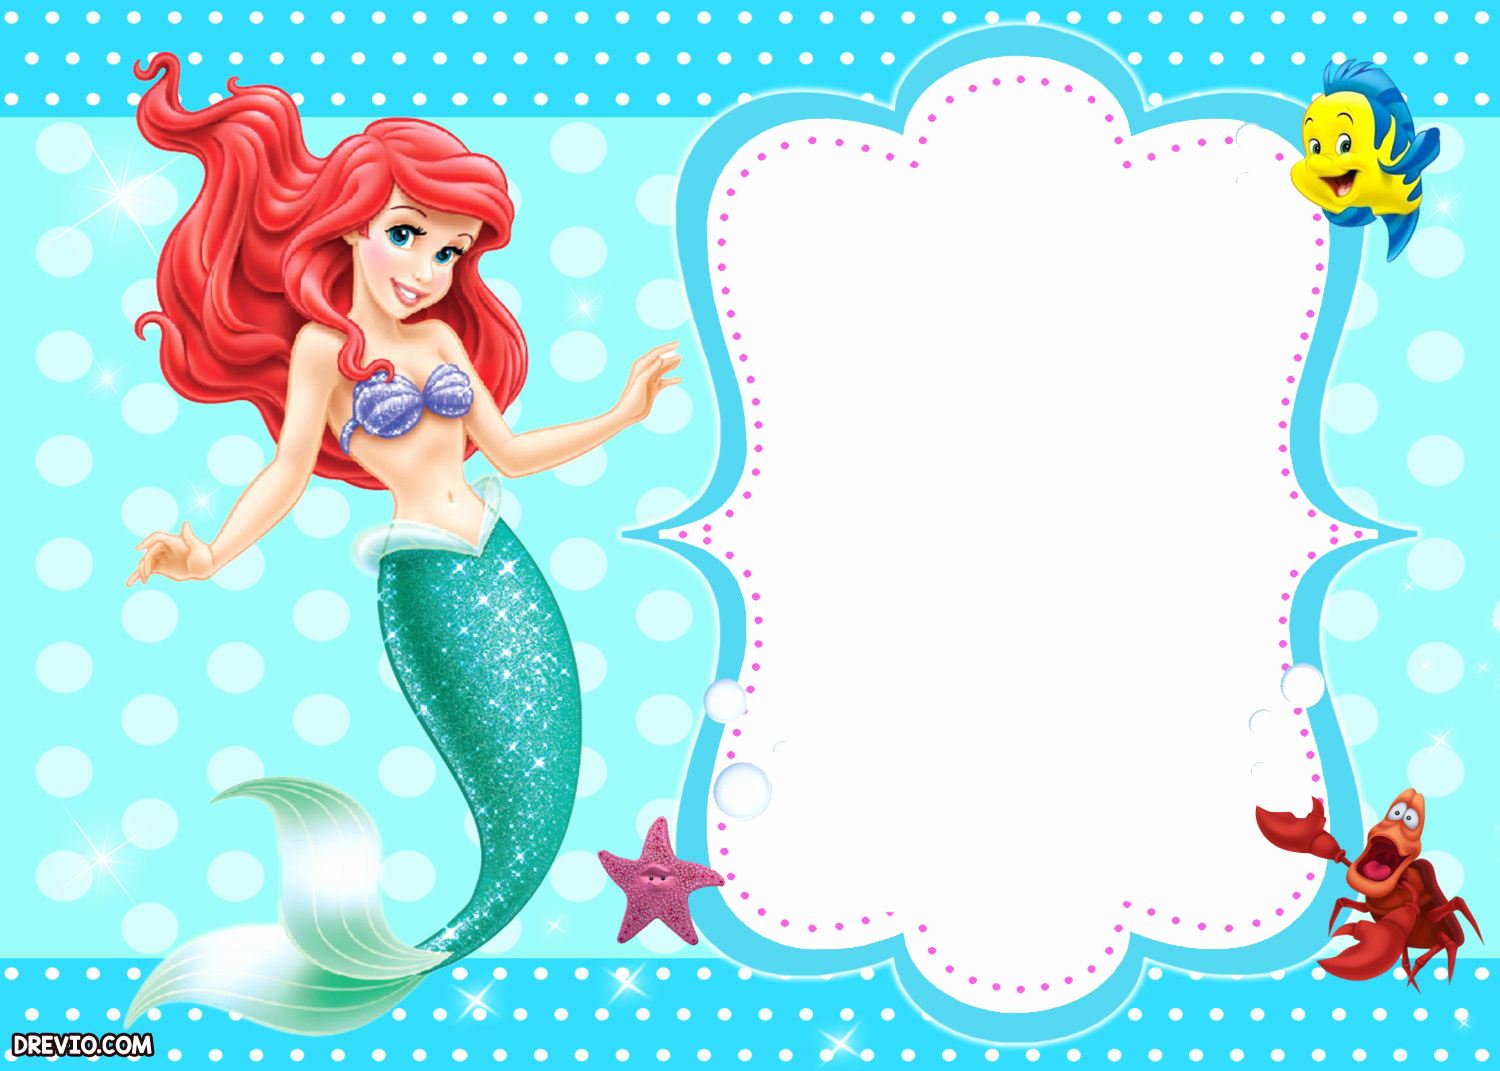 Little Mermaid Birthday Invitation Template Luxury Updated Free Printable Ariel the Little Mermaid